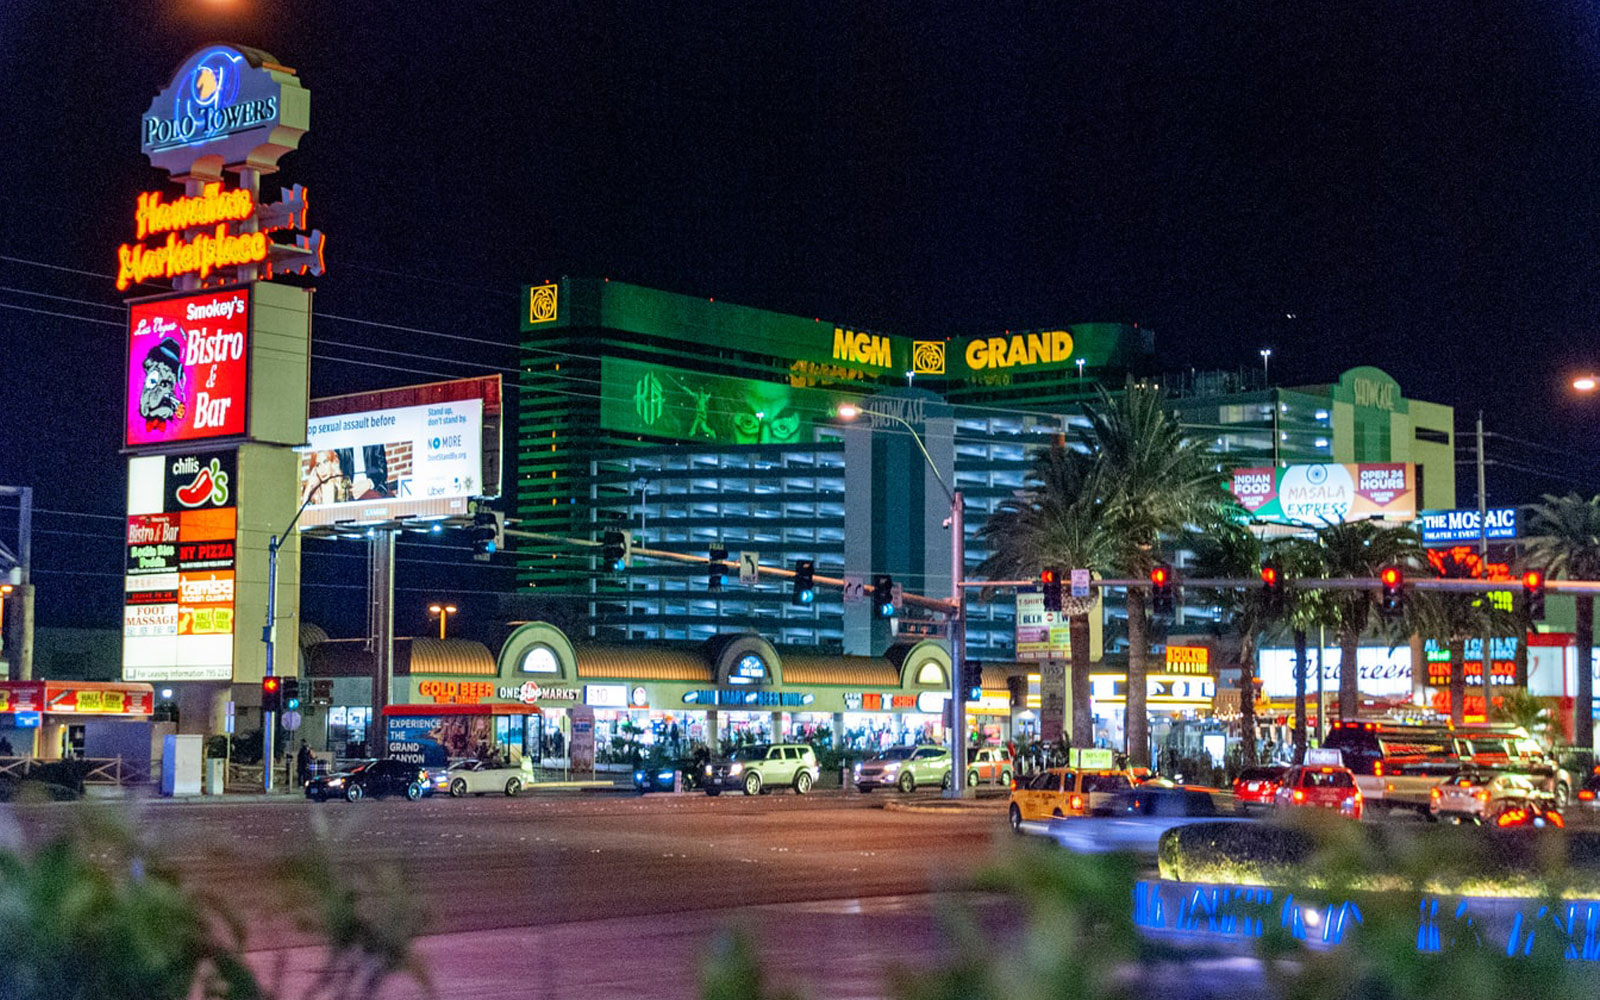 MGM Grand Casino, Las Vegas, Nevada